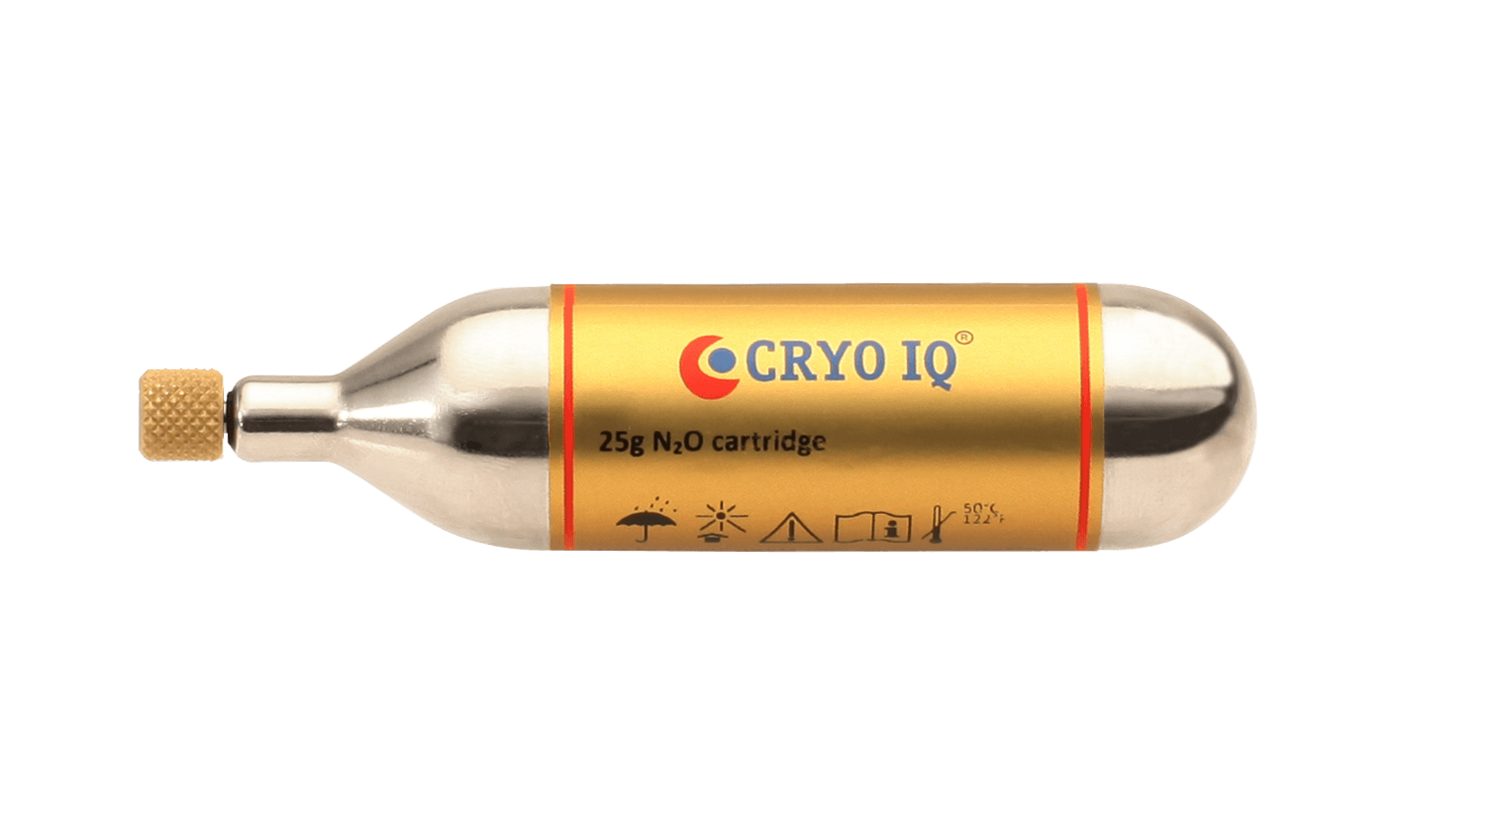 Cryo IQ Gas Cartridge 25 N2O cartridge